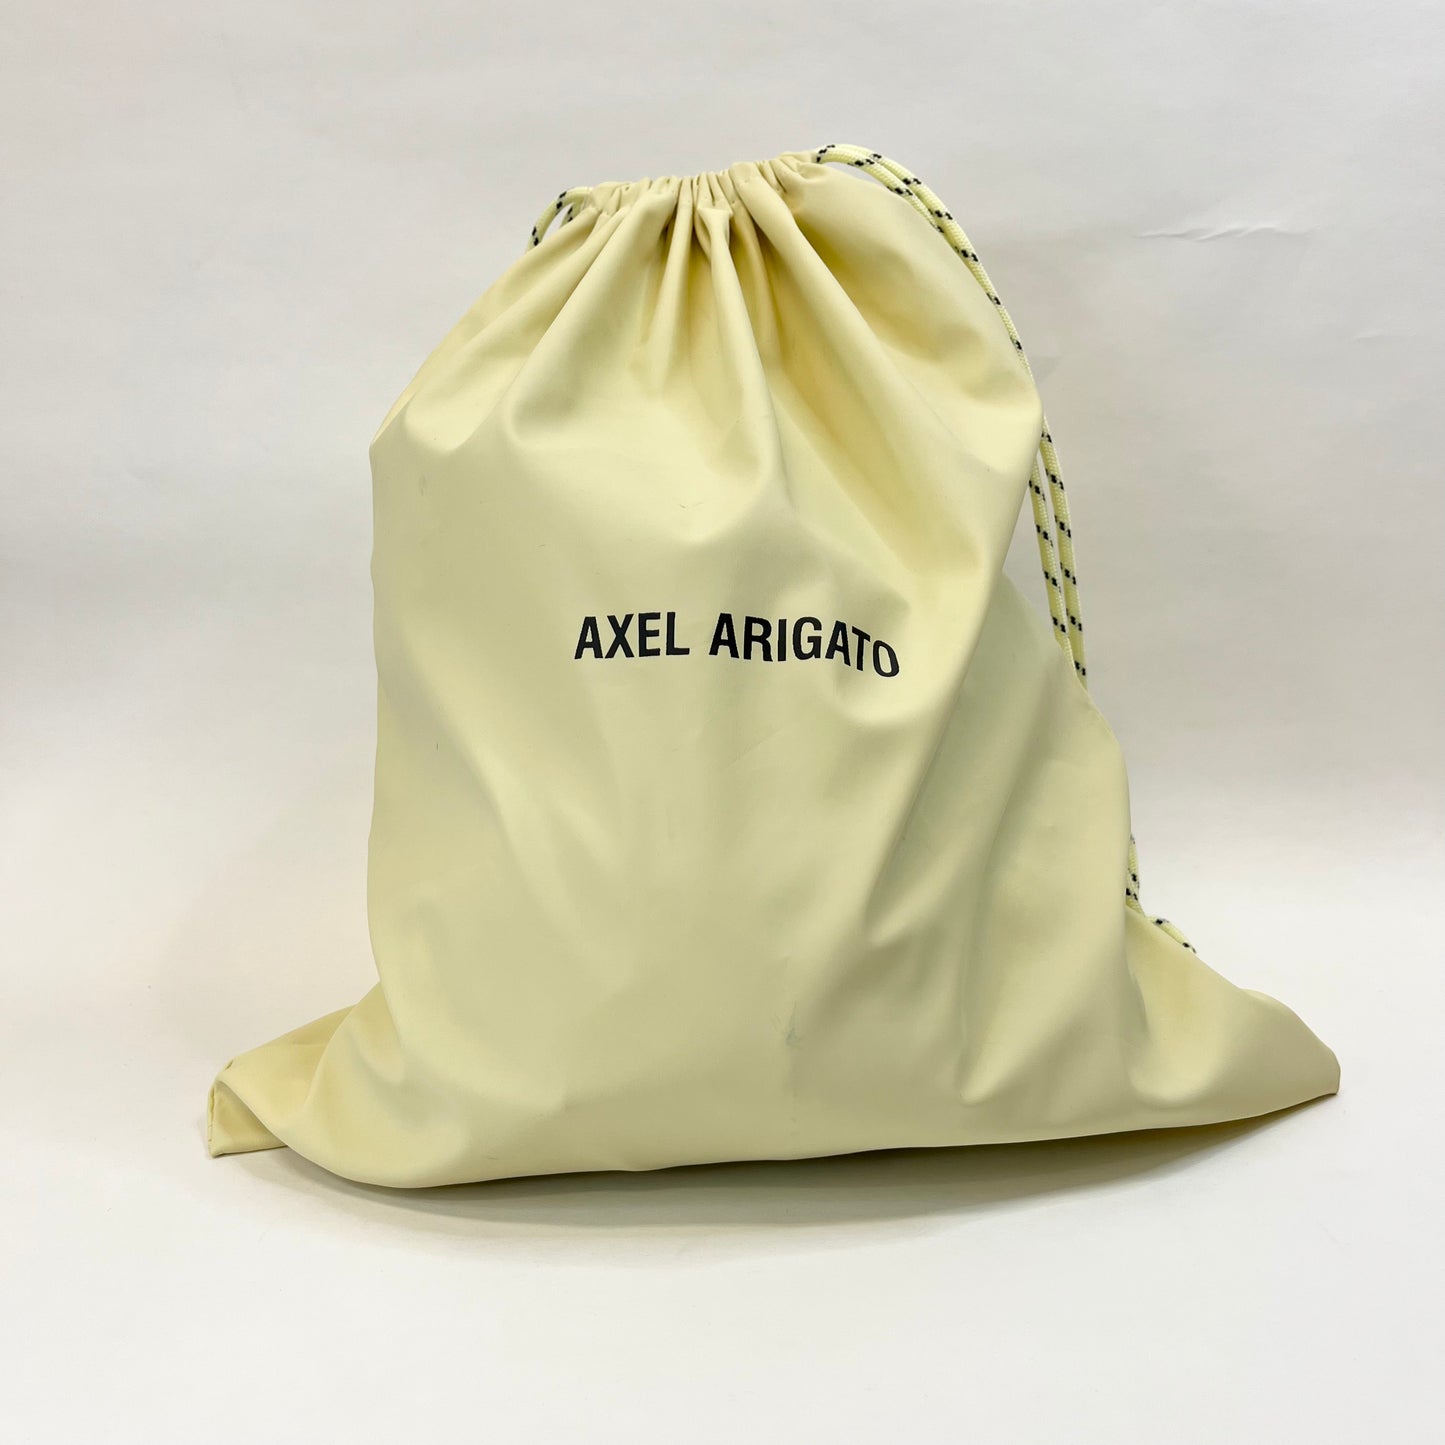 Alex Arigato - Dustbag